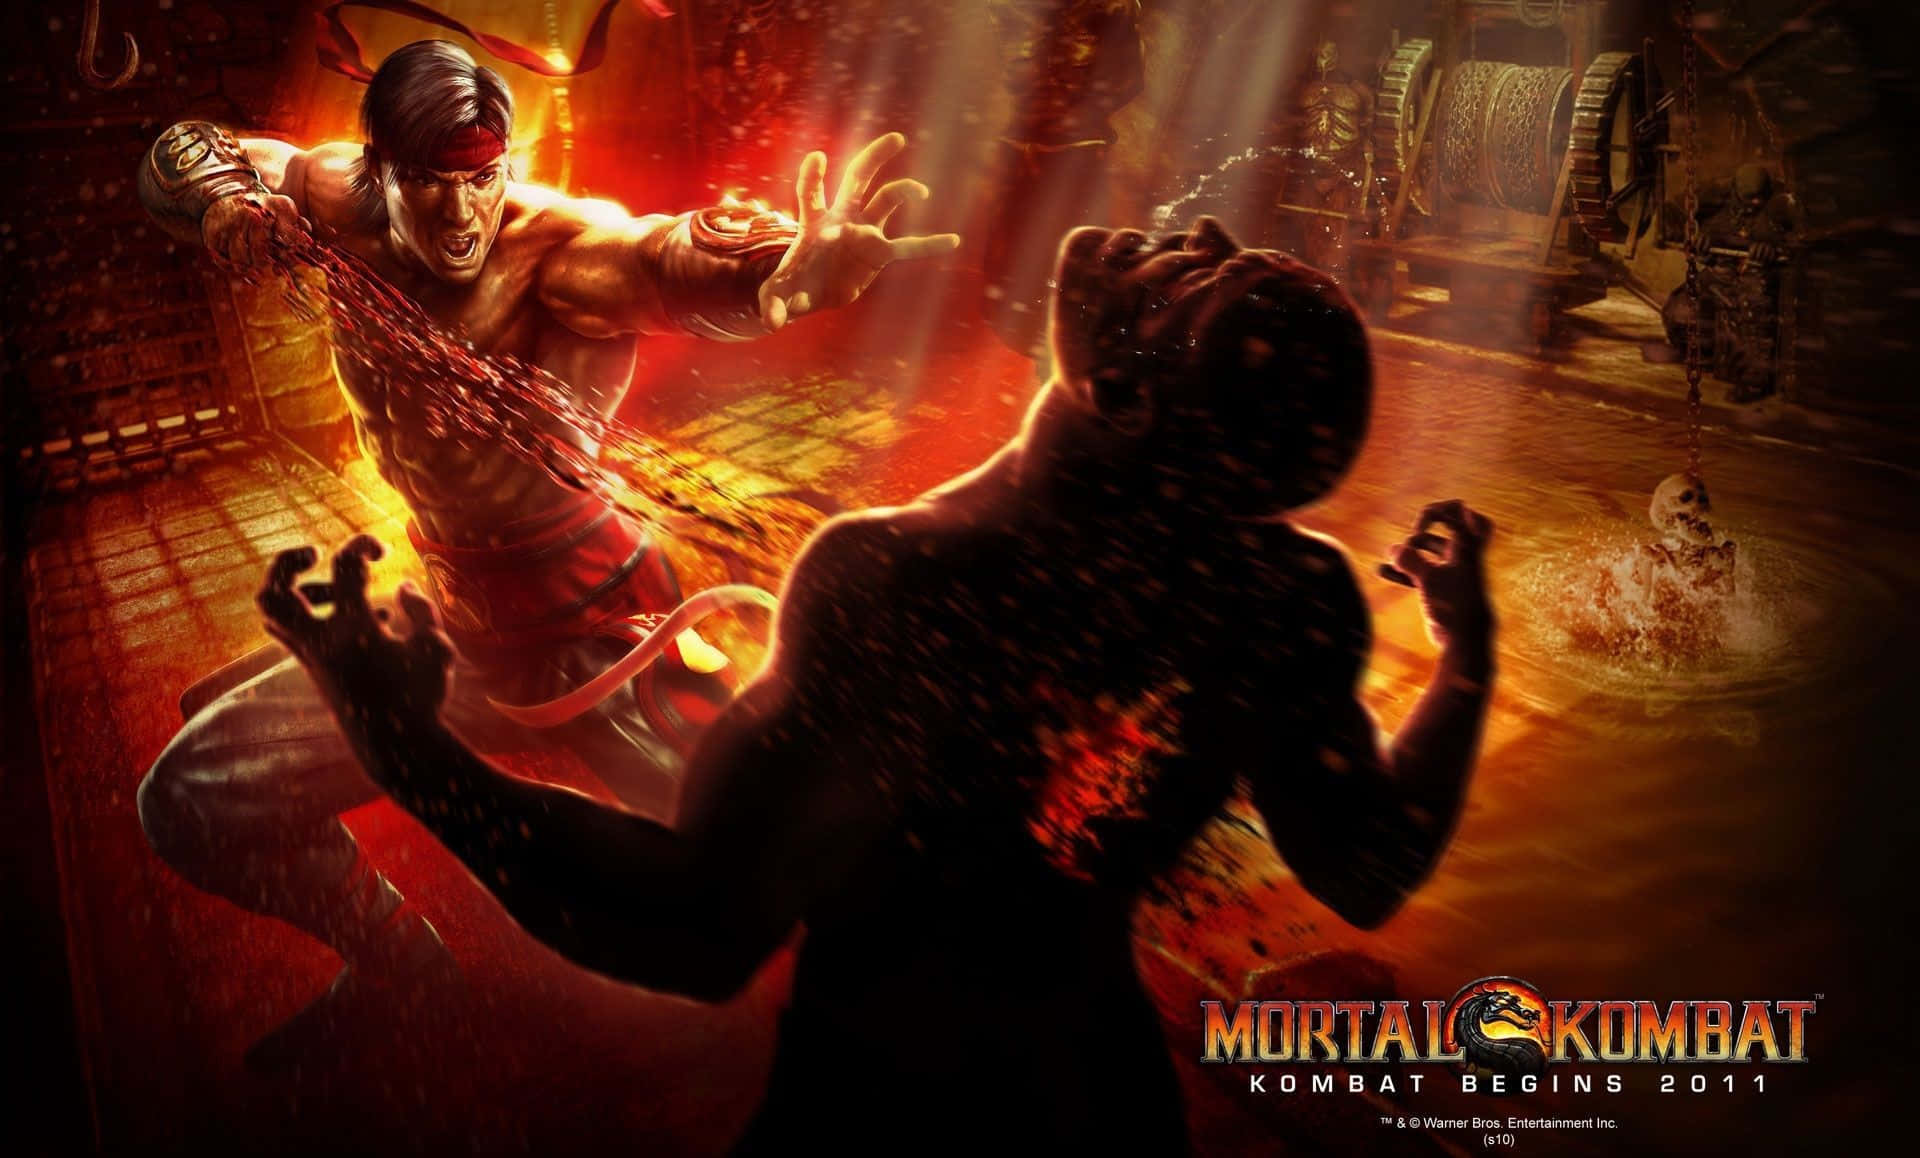 Mortal Kombat Liu Kang in Action Wallpaper